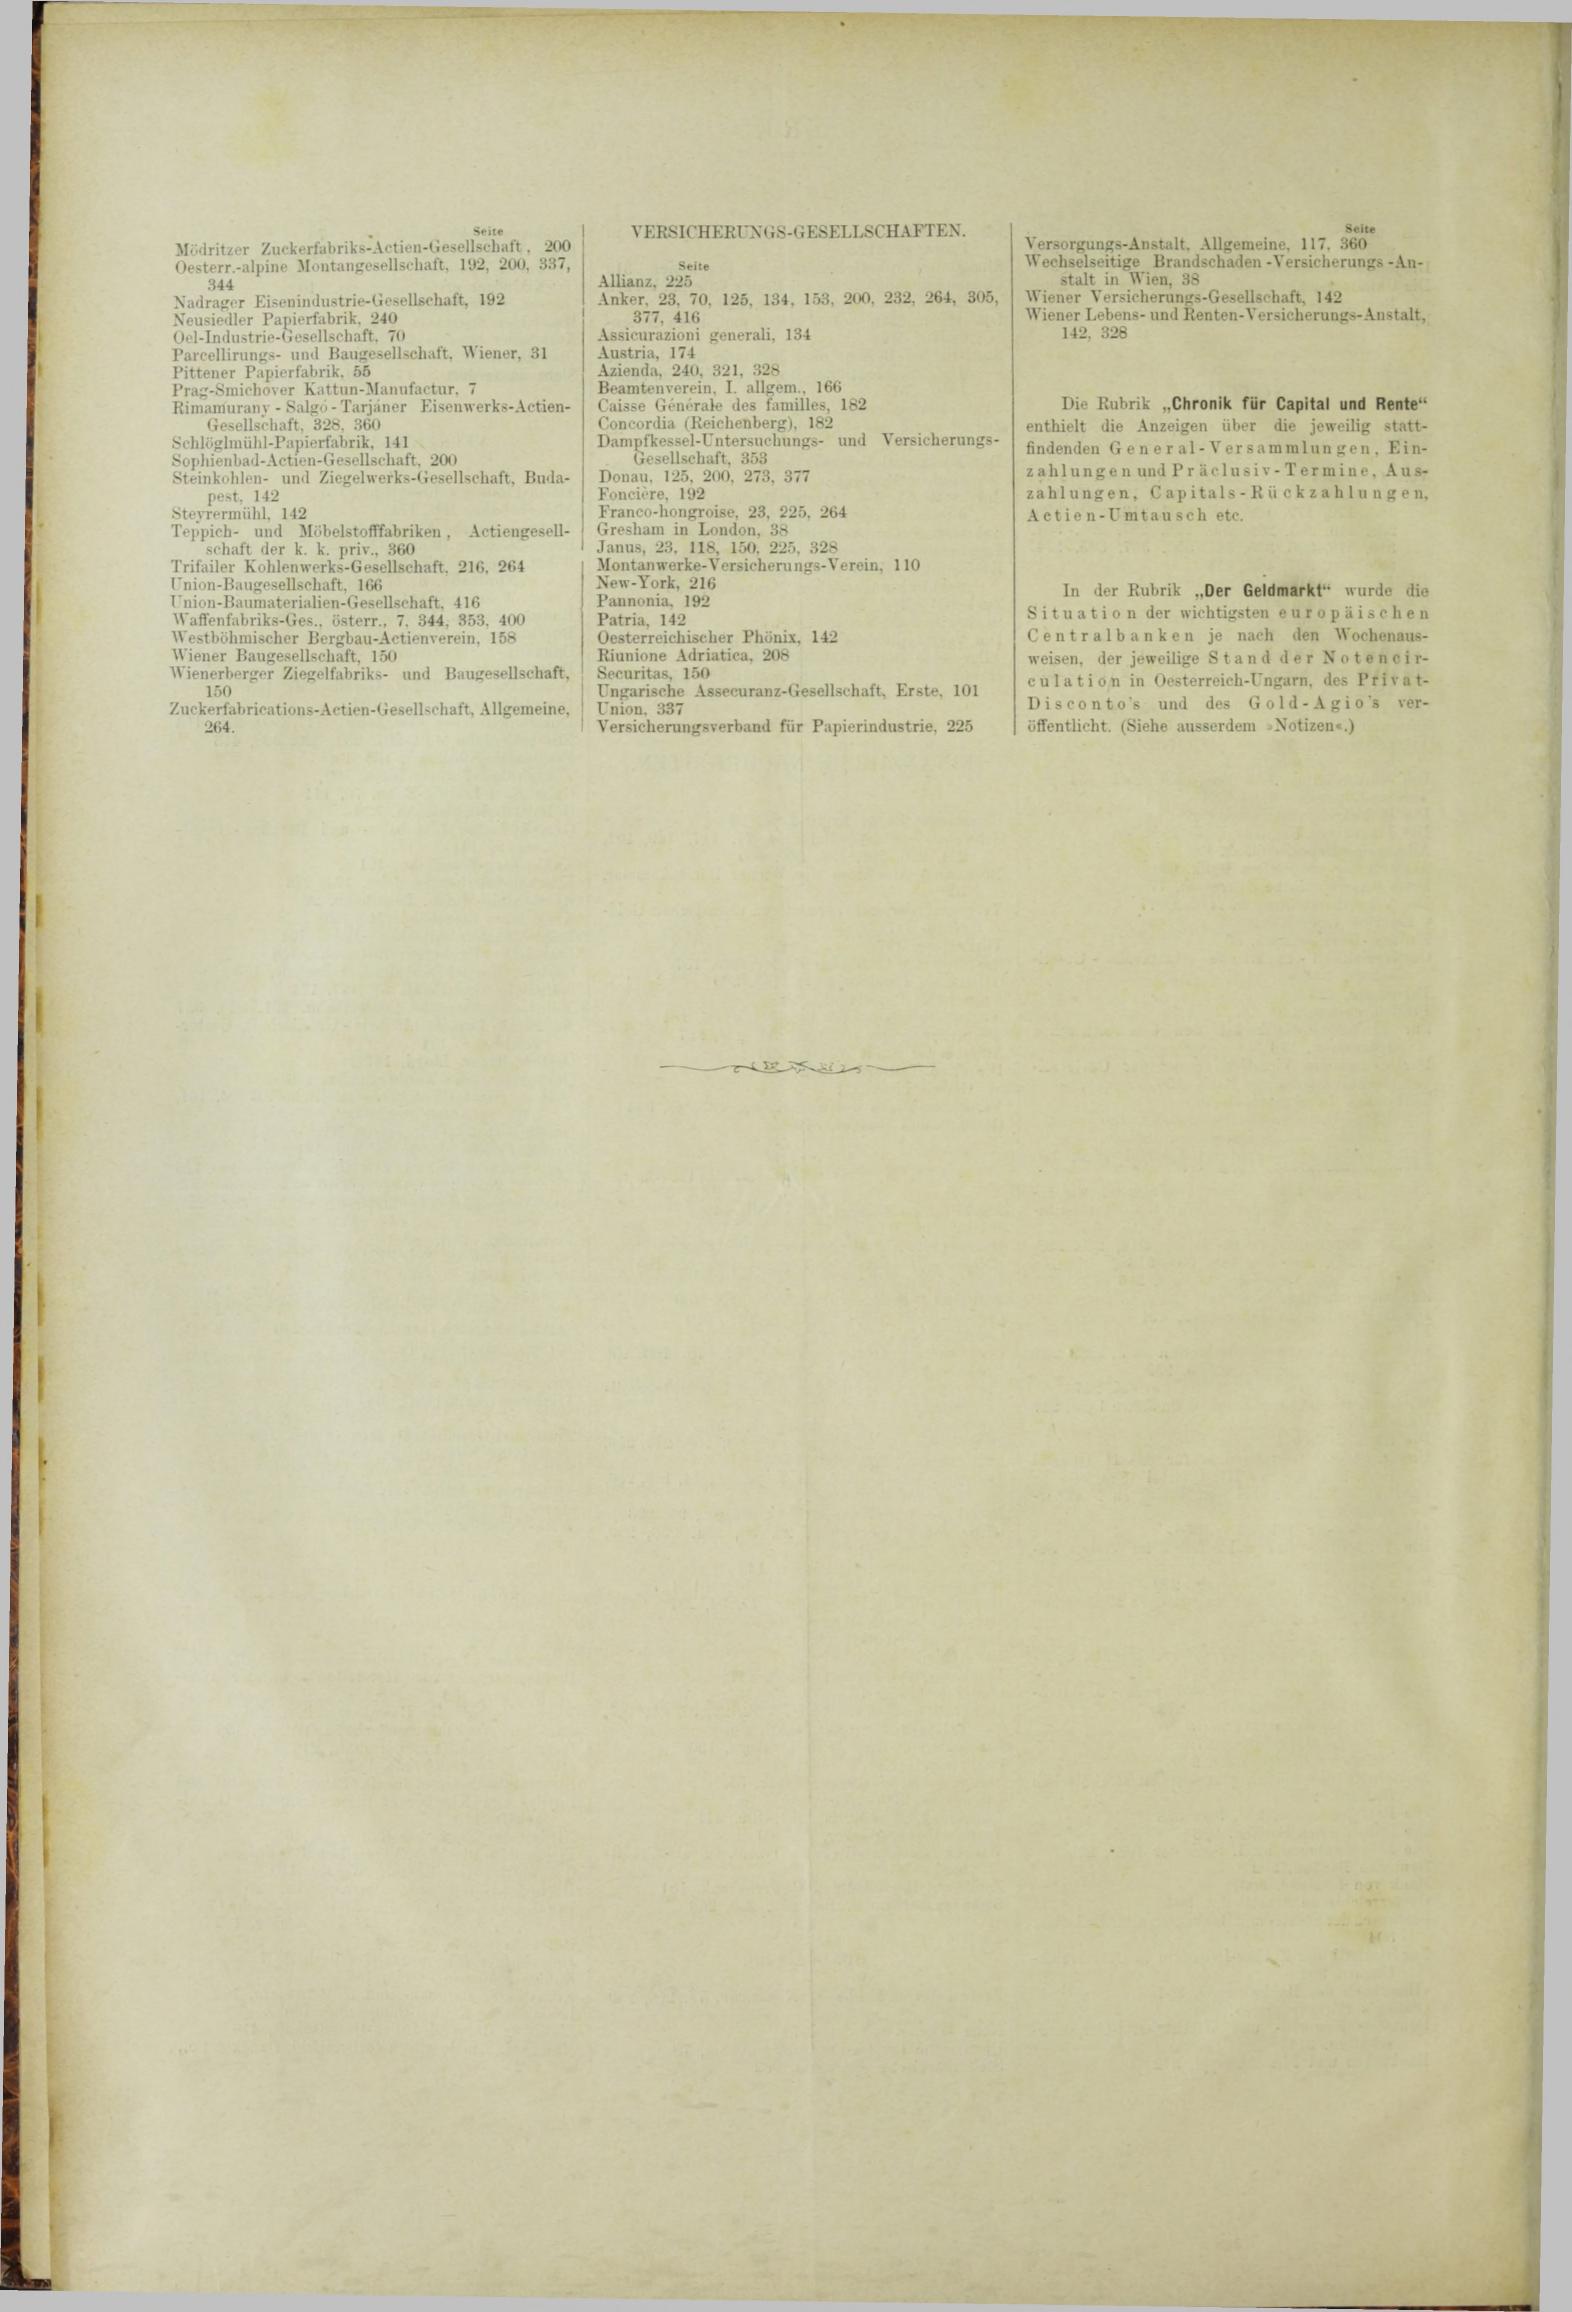 Der Tresor 20.09.1883 - Seite 12